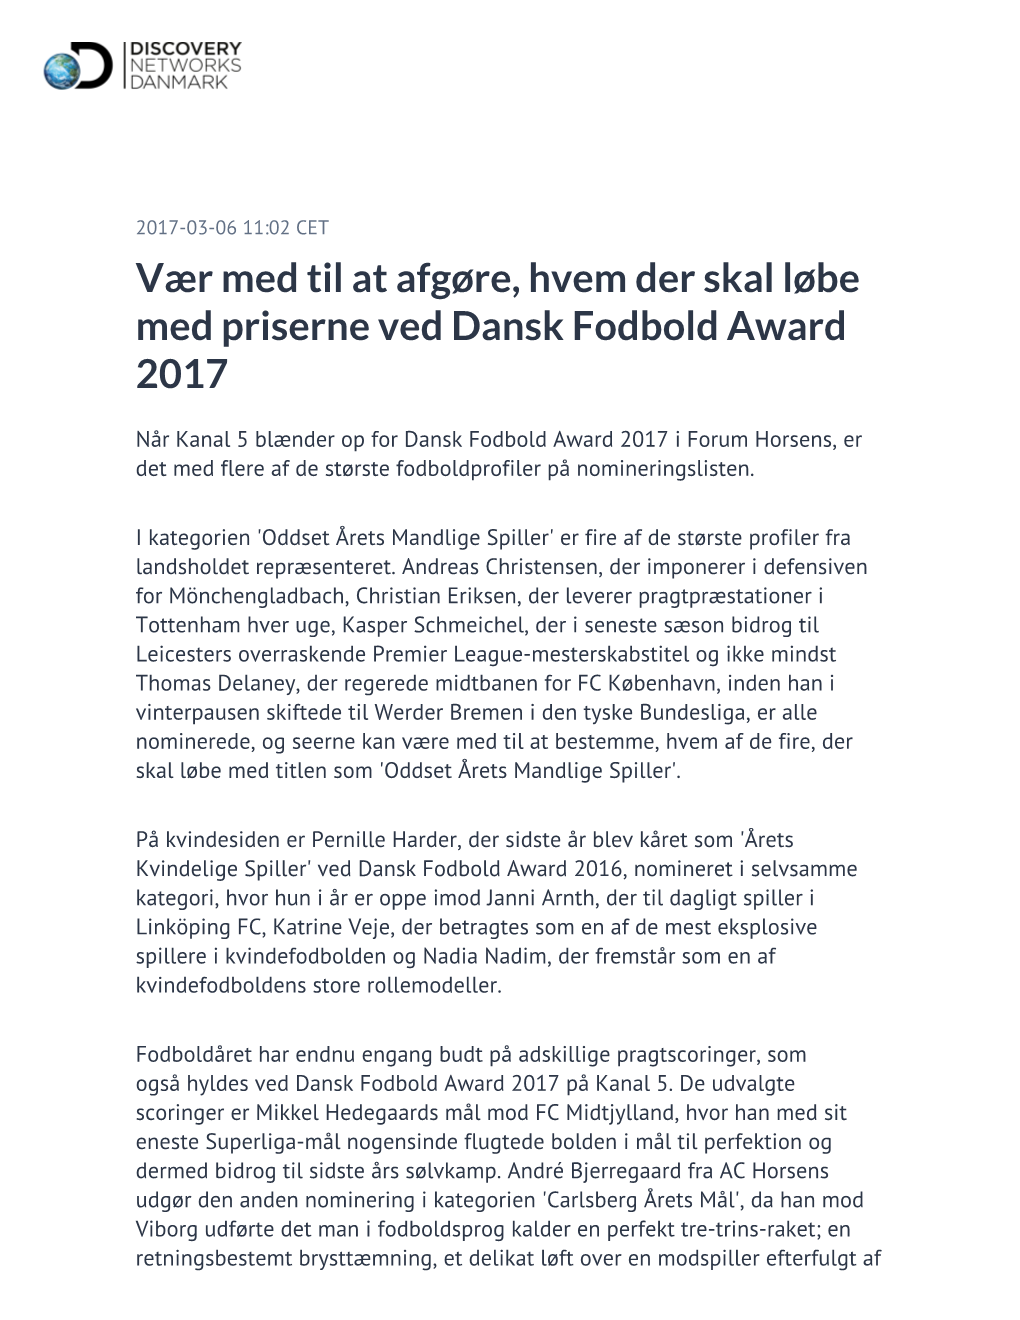 Vær Med Til at Afgøre, Hvem Der Skal Løbe Med Priserne Ved Dansk Fodbold Award 2017